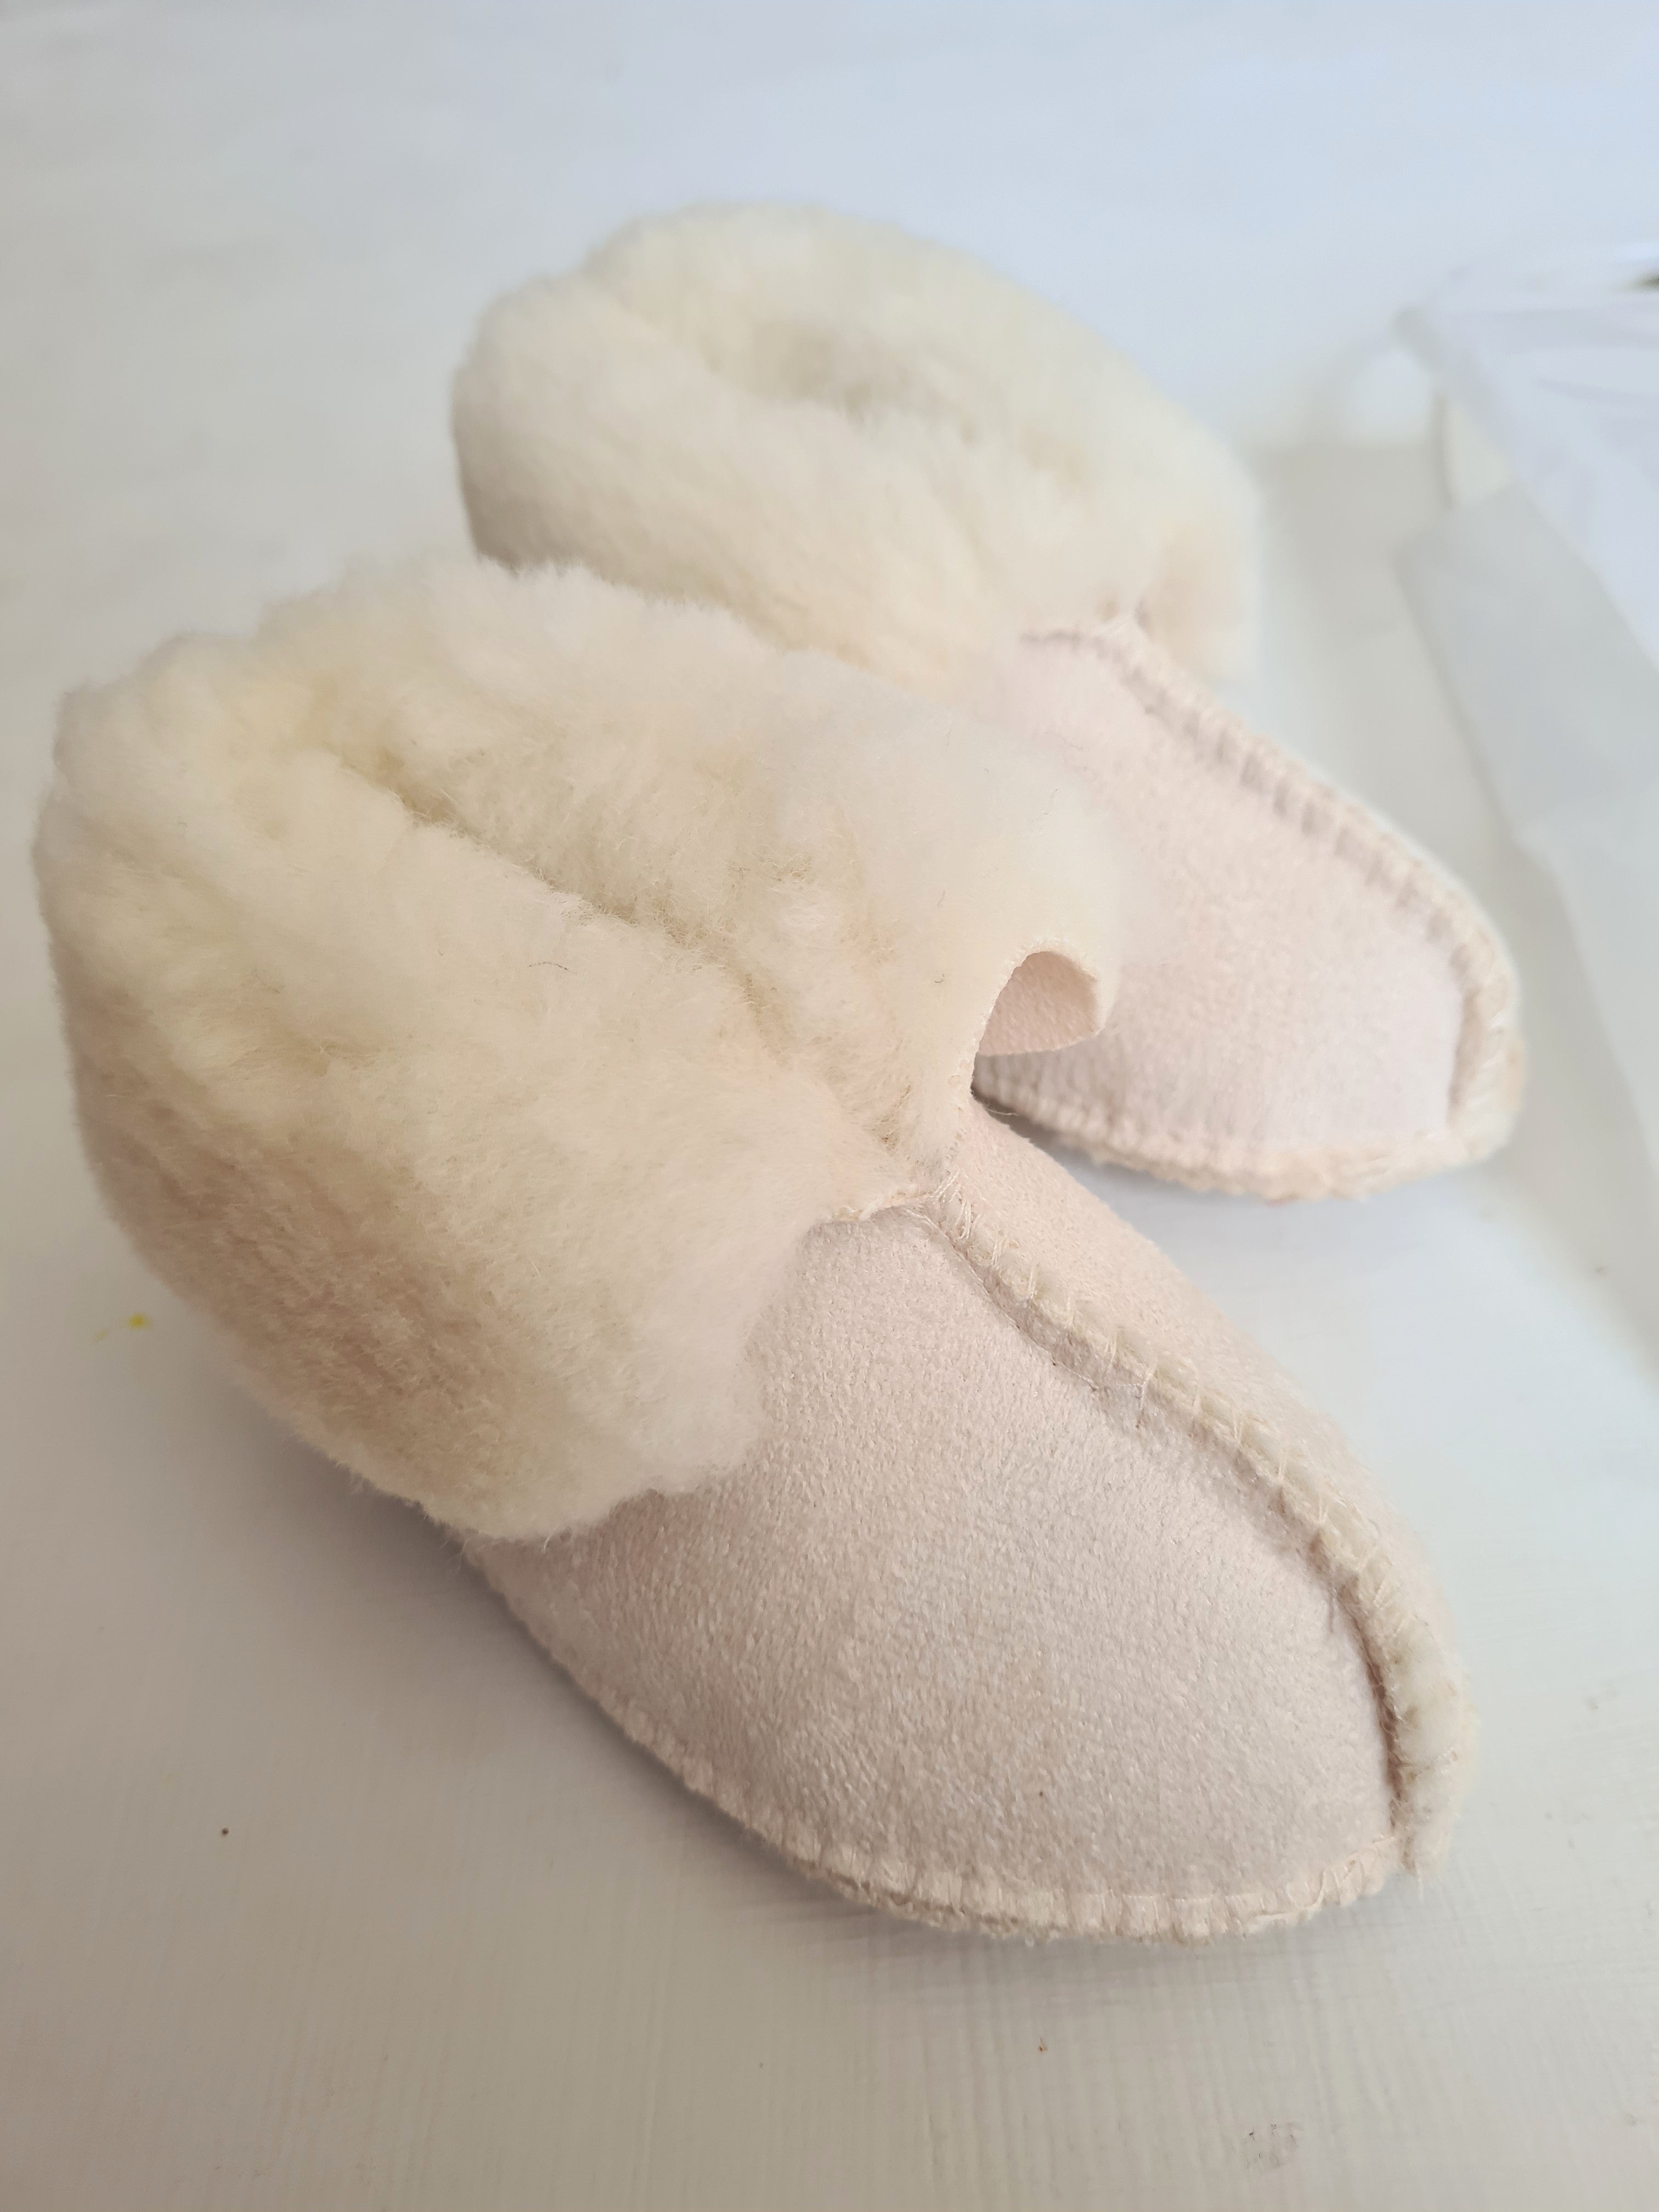 THRIFT Merino Mini Woolstar  - Australian Merino Wool Baby Slippers Size 0-6 months